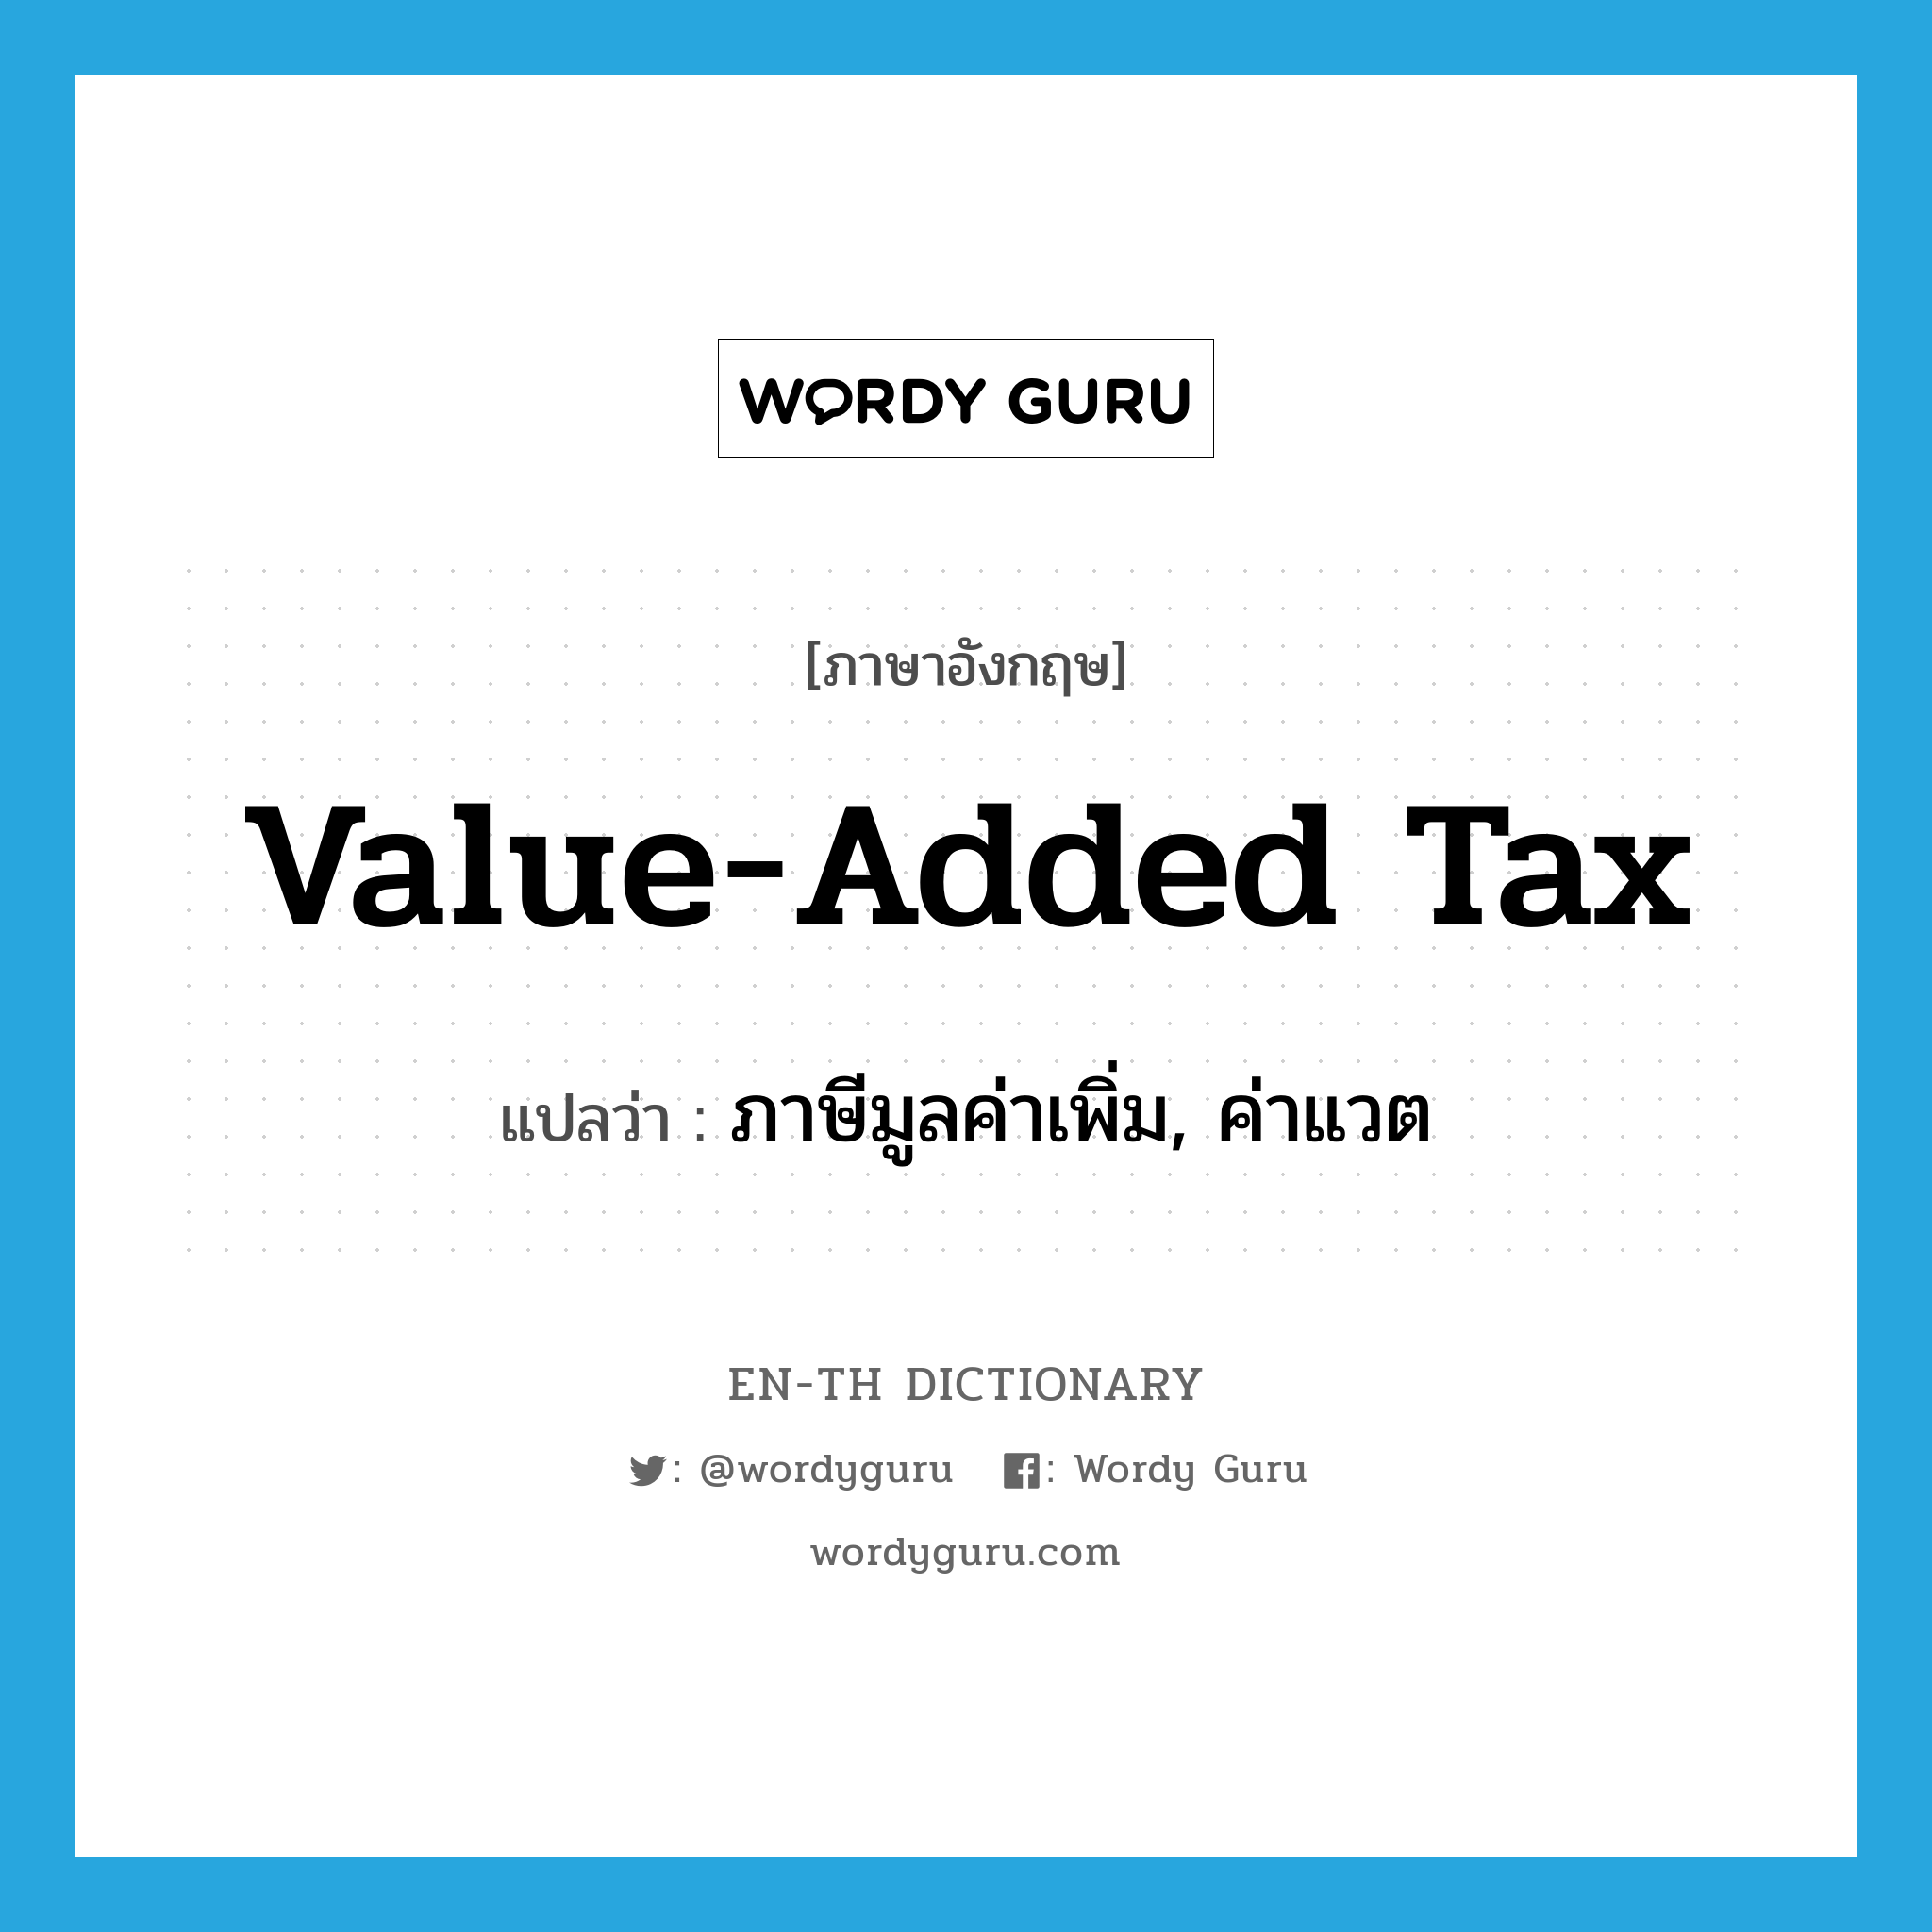 ภาษีมูลค่าเพิ่ม, ค่าแวต ภาษาอังกฤษ?, คำศัพท์ภาษาอังกฤษ ภาษีมูลค่าเพิ่ม, ค่าแวต แปลว่า value-added tax ประเภท N หมวด N